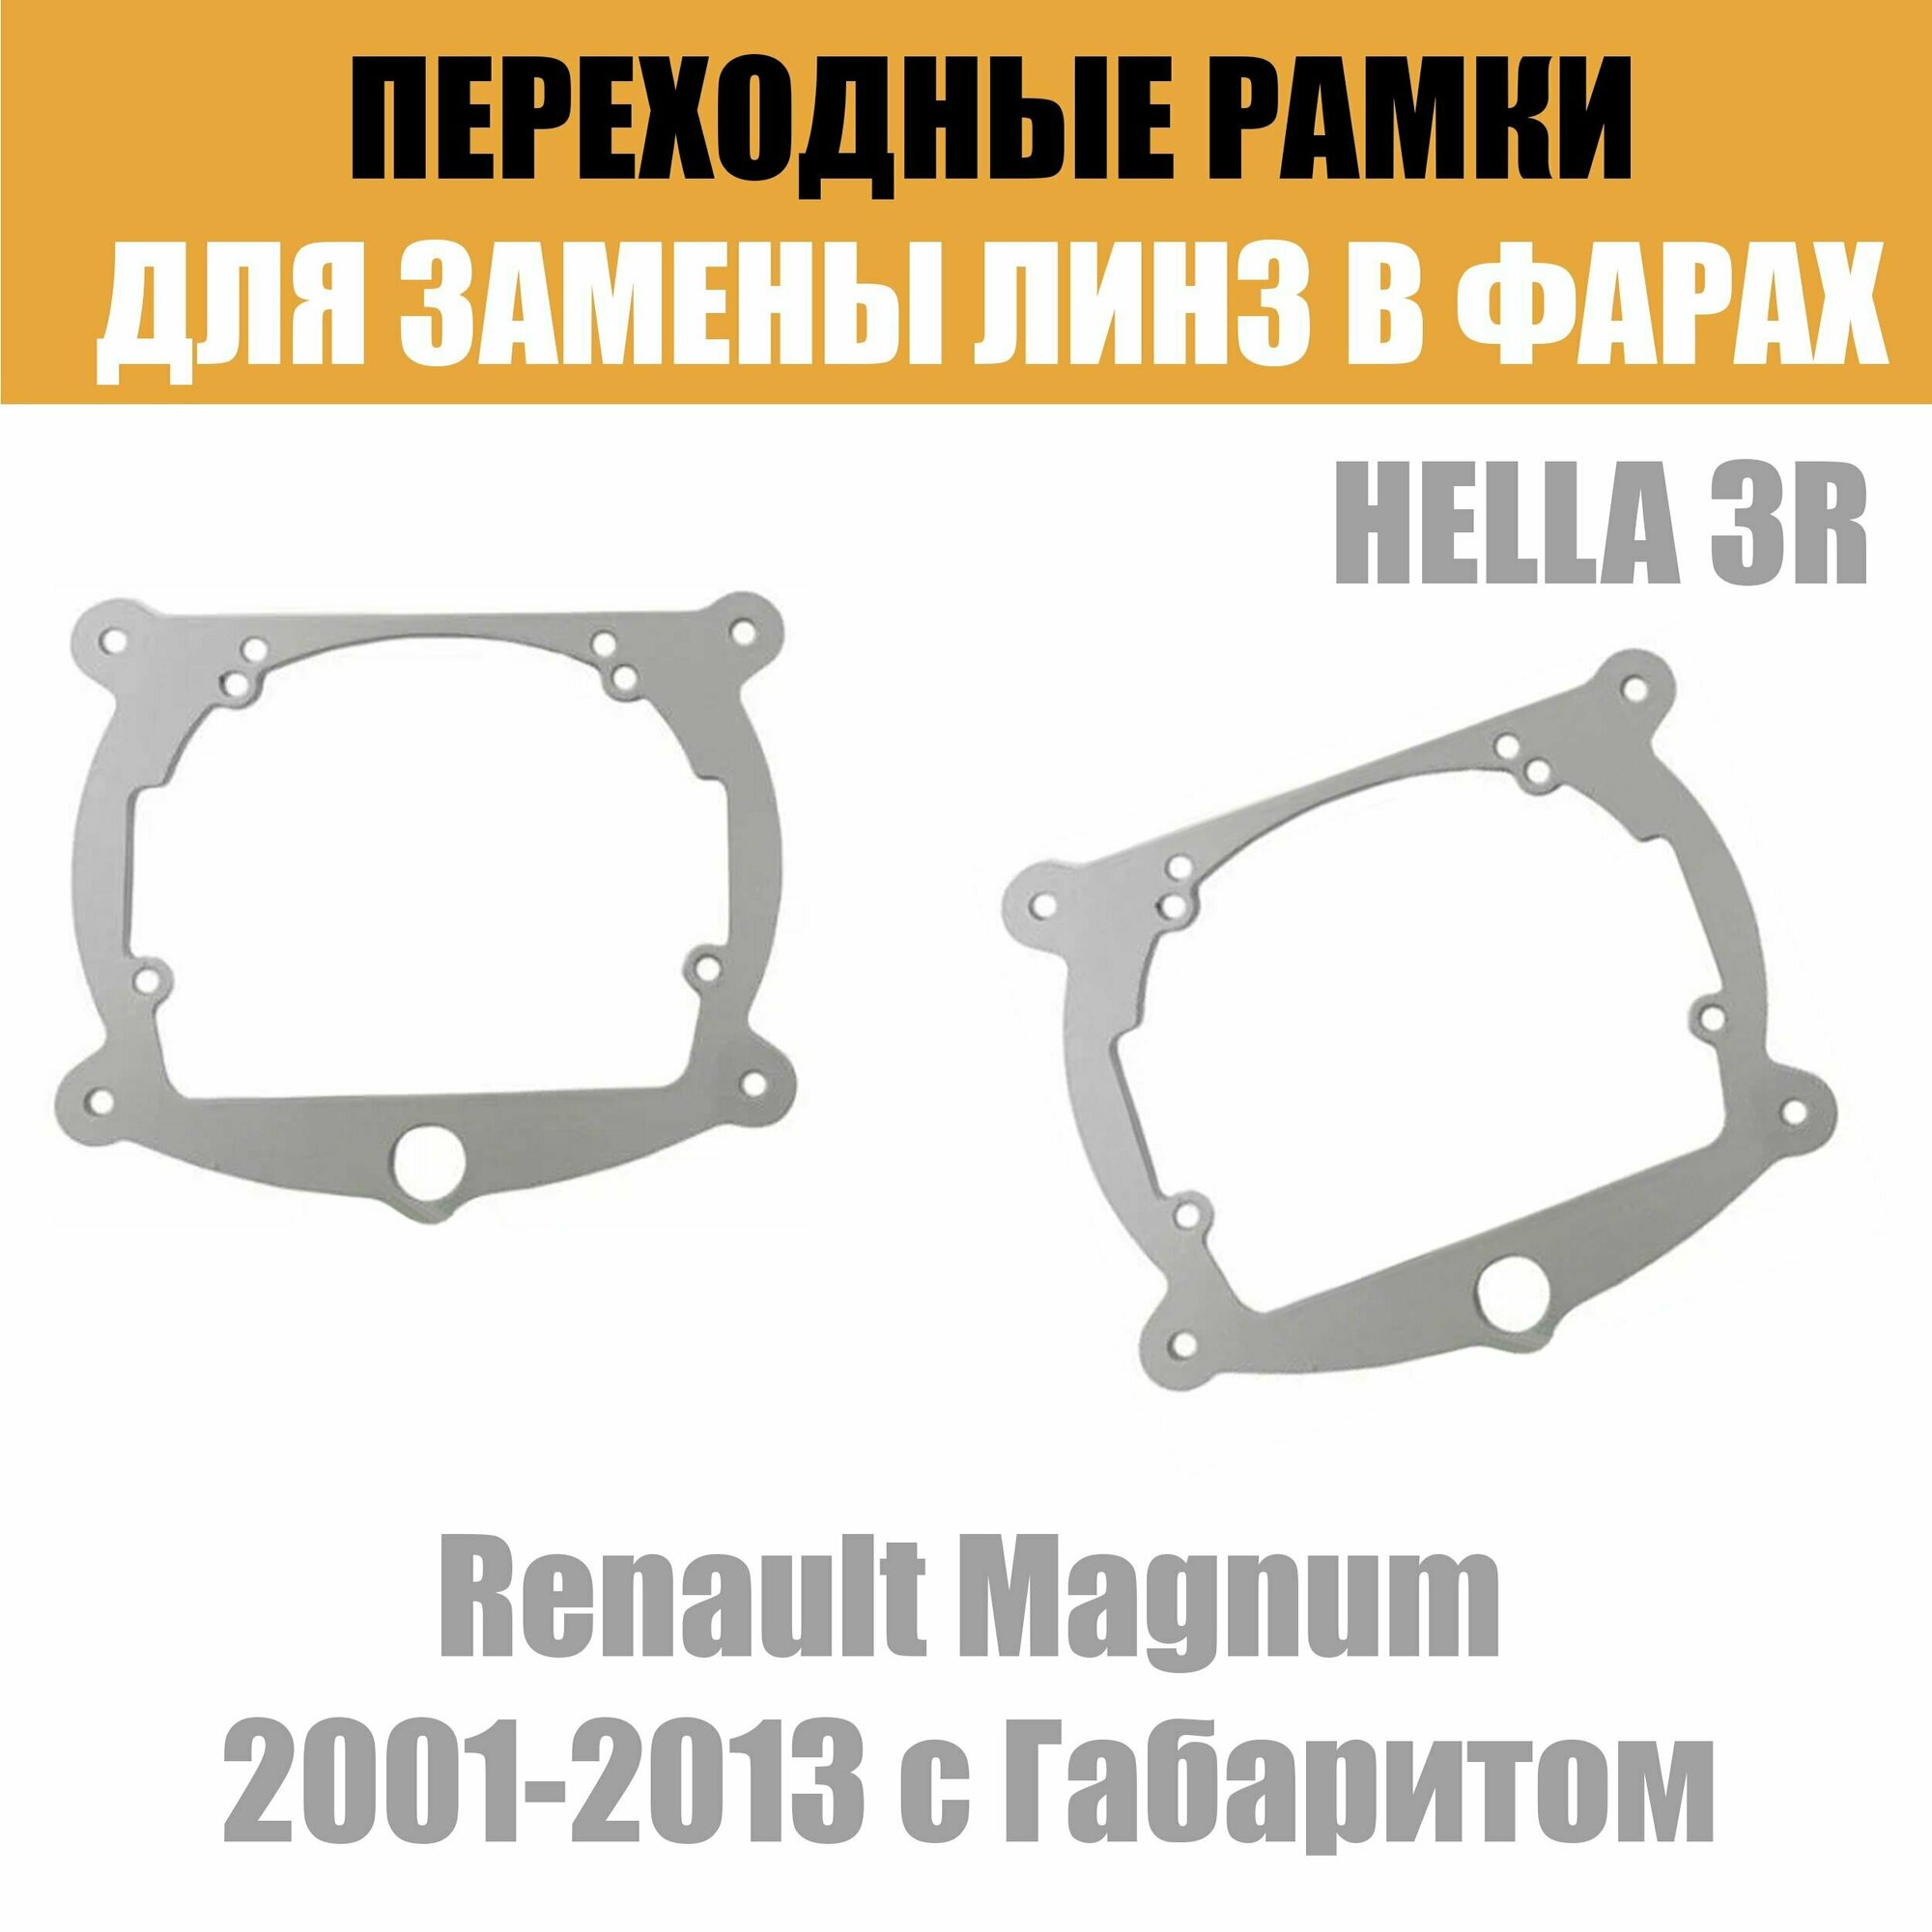 Переходные рамки для линз №8 на Renault Magnum 2001-2013 с Габаритом под модуль Hella 3R/Hella 3 (Комплект 2шт)